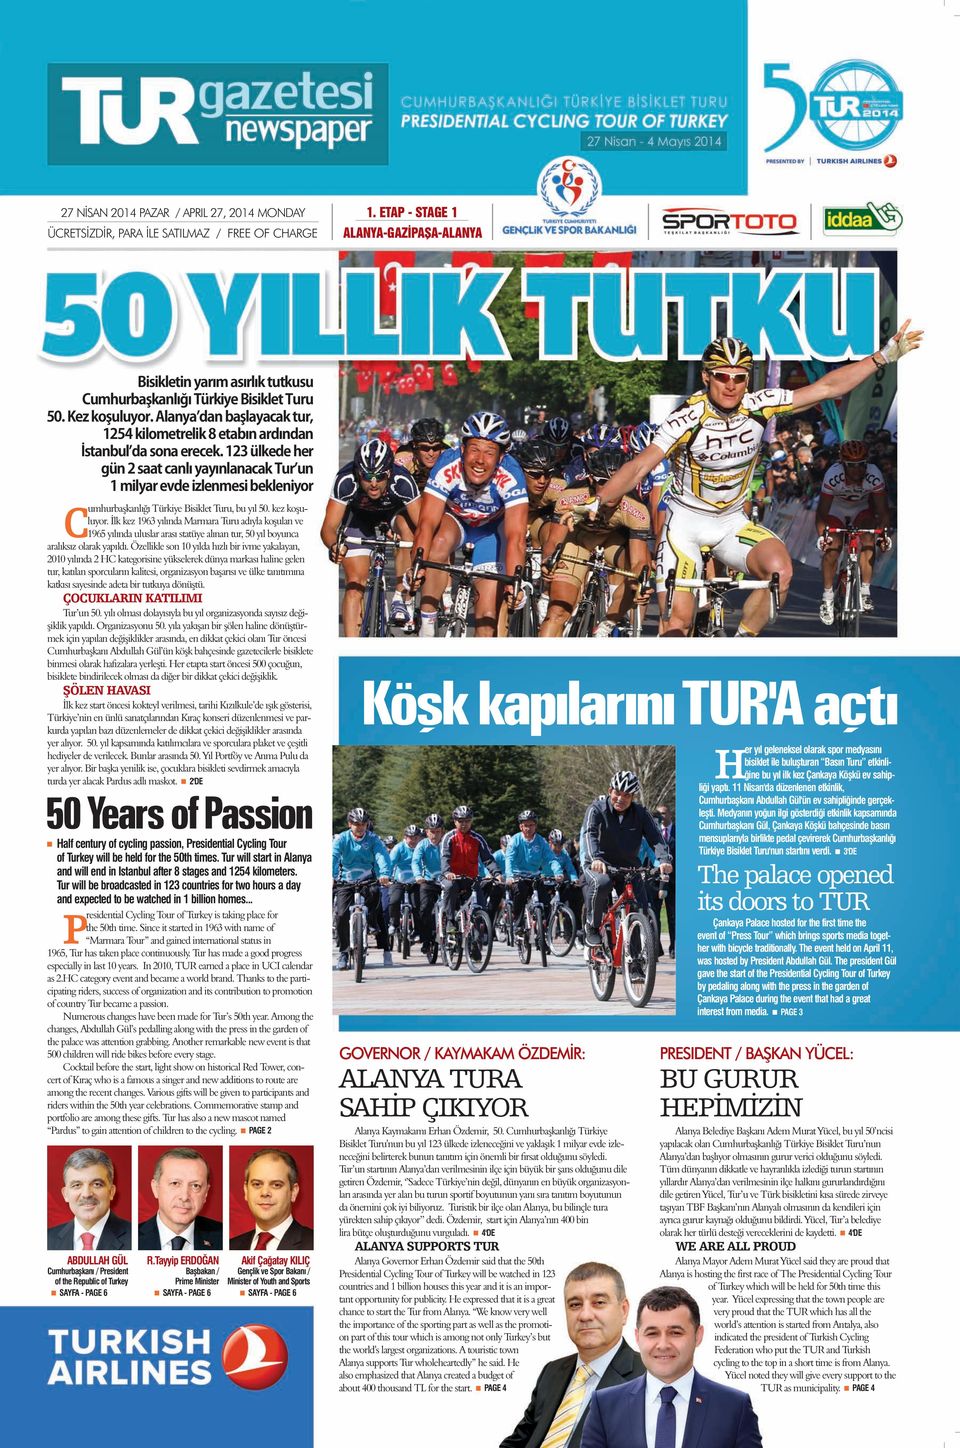 123 ülkede her gün 2 saat canlı yayınlanacak Turʼun 1 milyar evde izlenmesi bekleniyor Cumhurbaşkanlığı Türkiye Bisiklet Turu, bu yıl 50. kez koşuluyor.